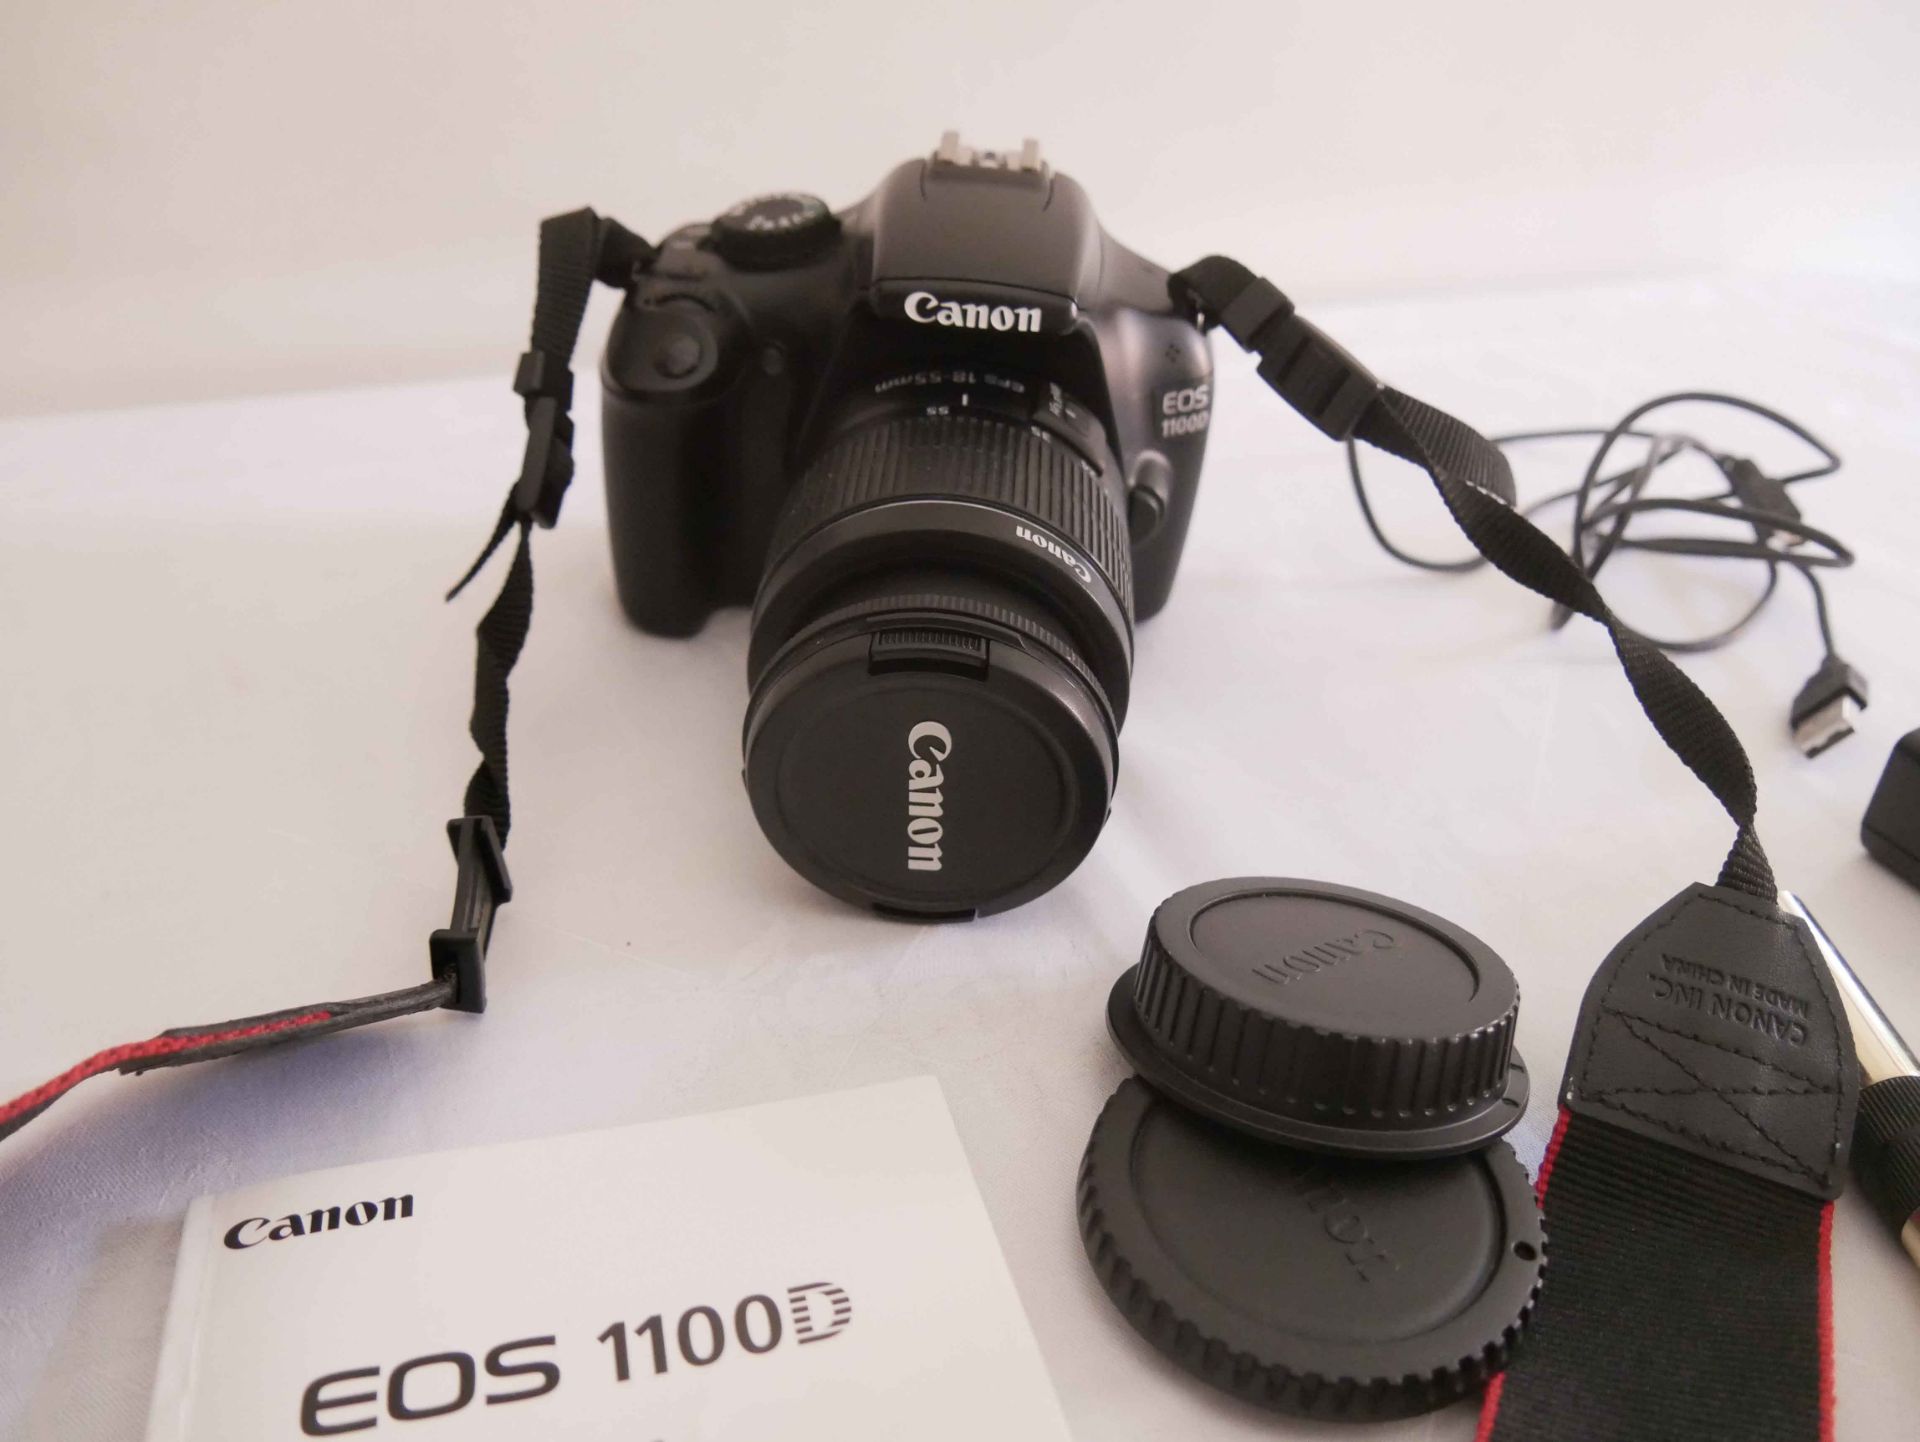 Foto Kamera Canon EOS 100 D in Tasche mit Gebrauchsspuren. Bitte besichtigen - Image 2 of 2